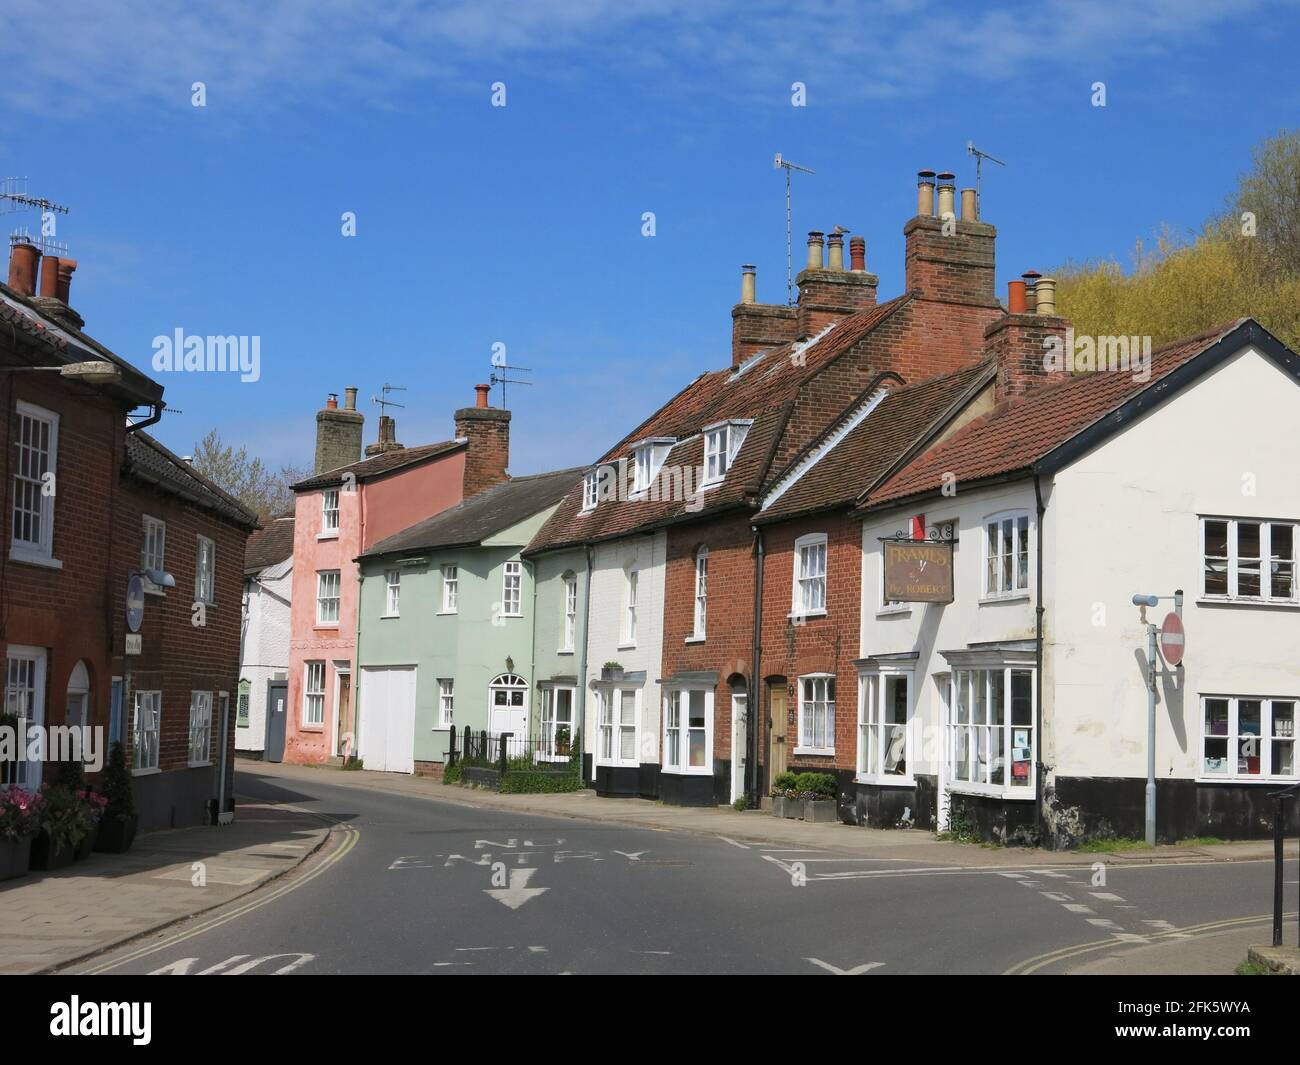 Fila di graziose case a schiera in tipici colori pastello dell'Est Angliano; New Street, Woodbridge, Suffolk. Foto Stock